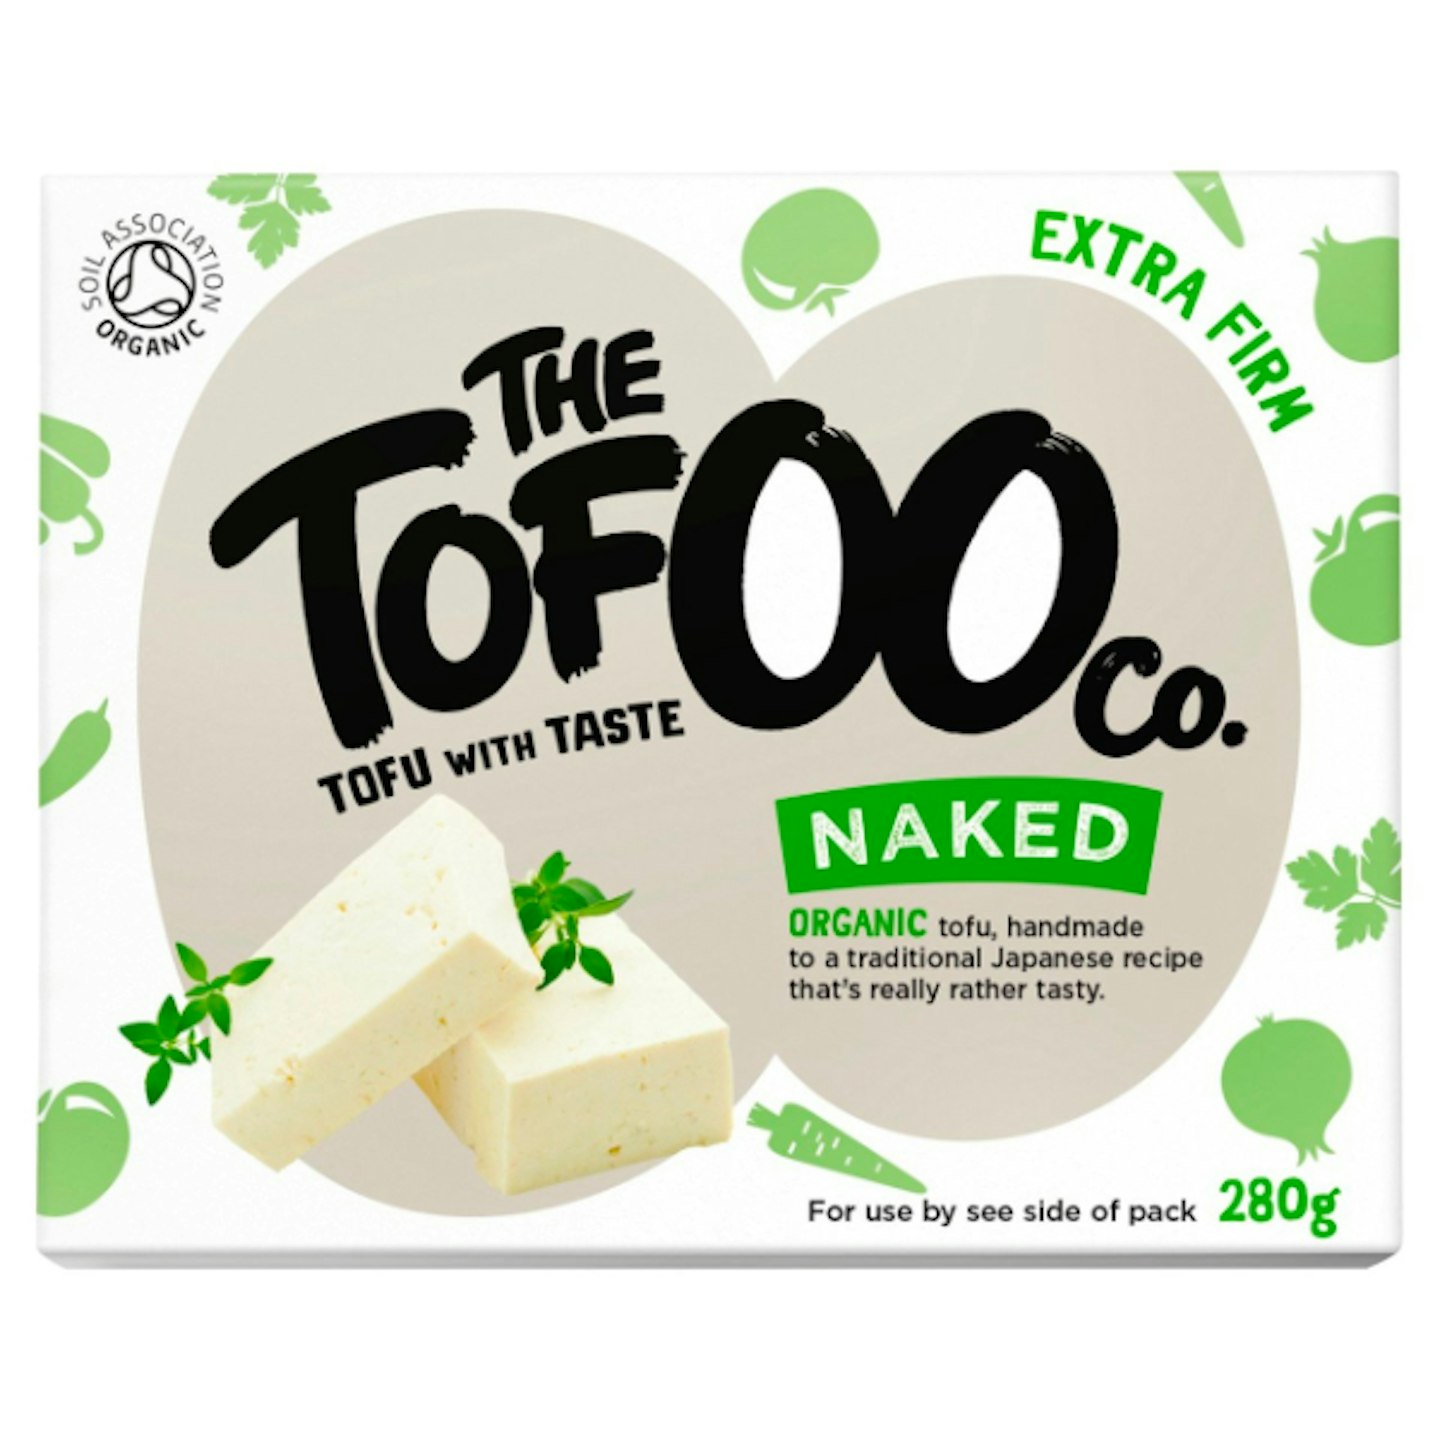 The Tofoo Co. Tofu